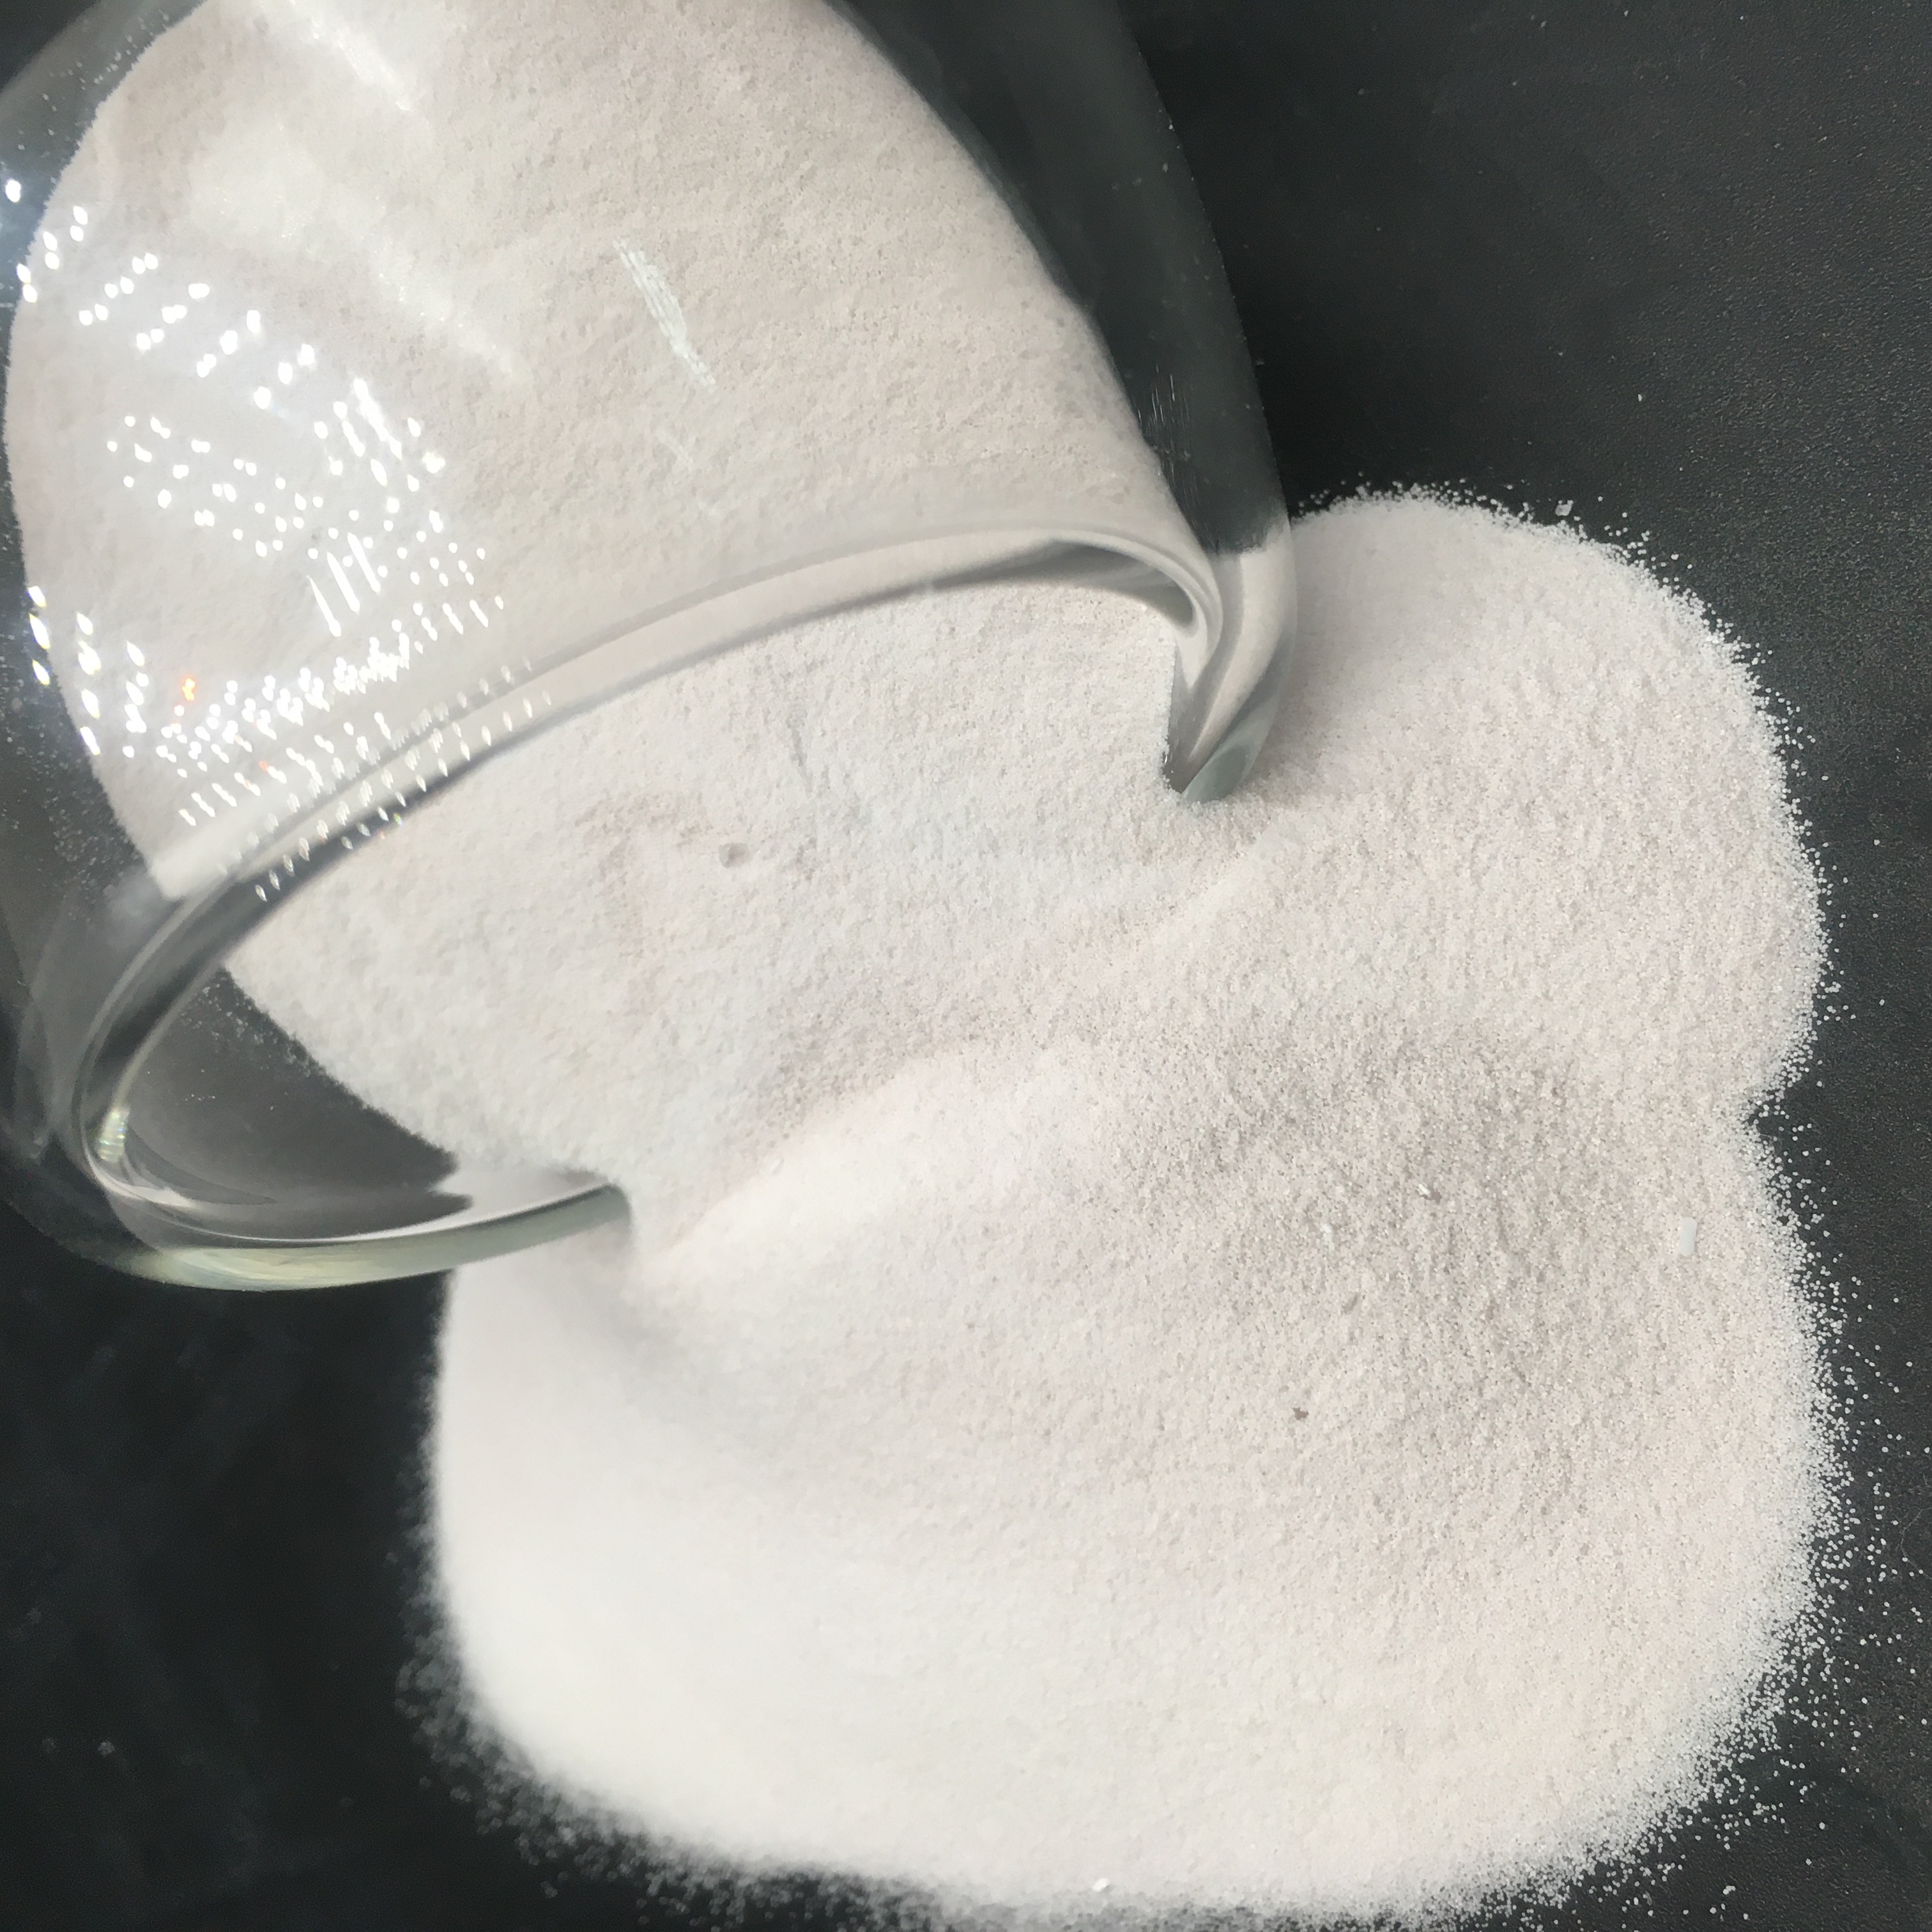 prix du sulfate de manganèse monohydraté mono granulaire mono poudre pentahydrae qualité industrielle